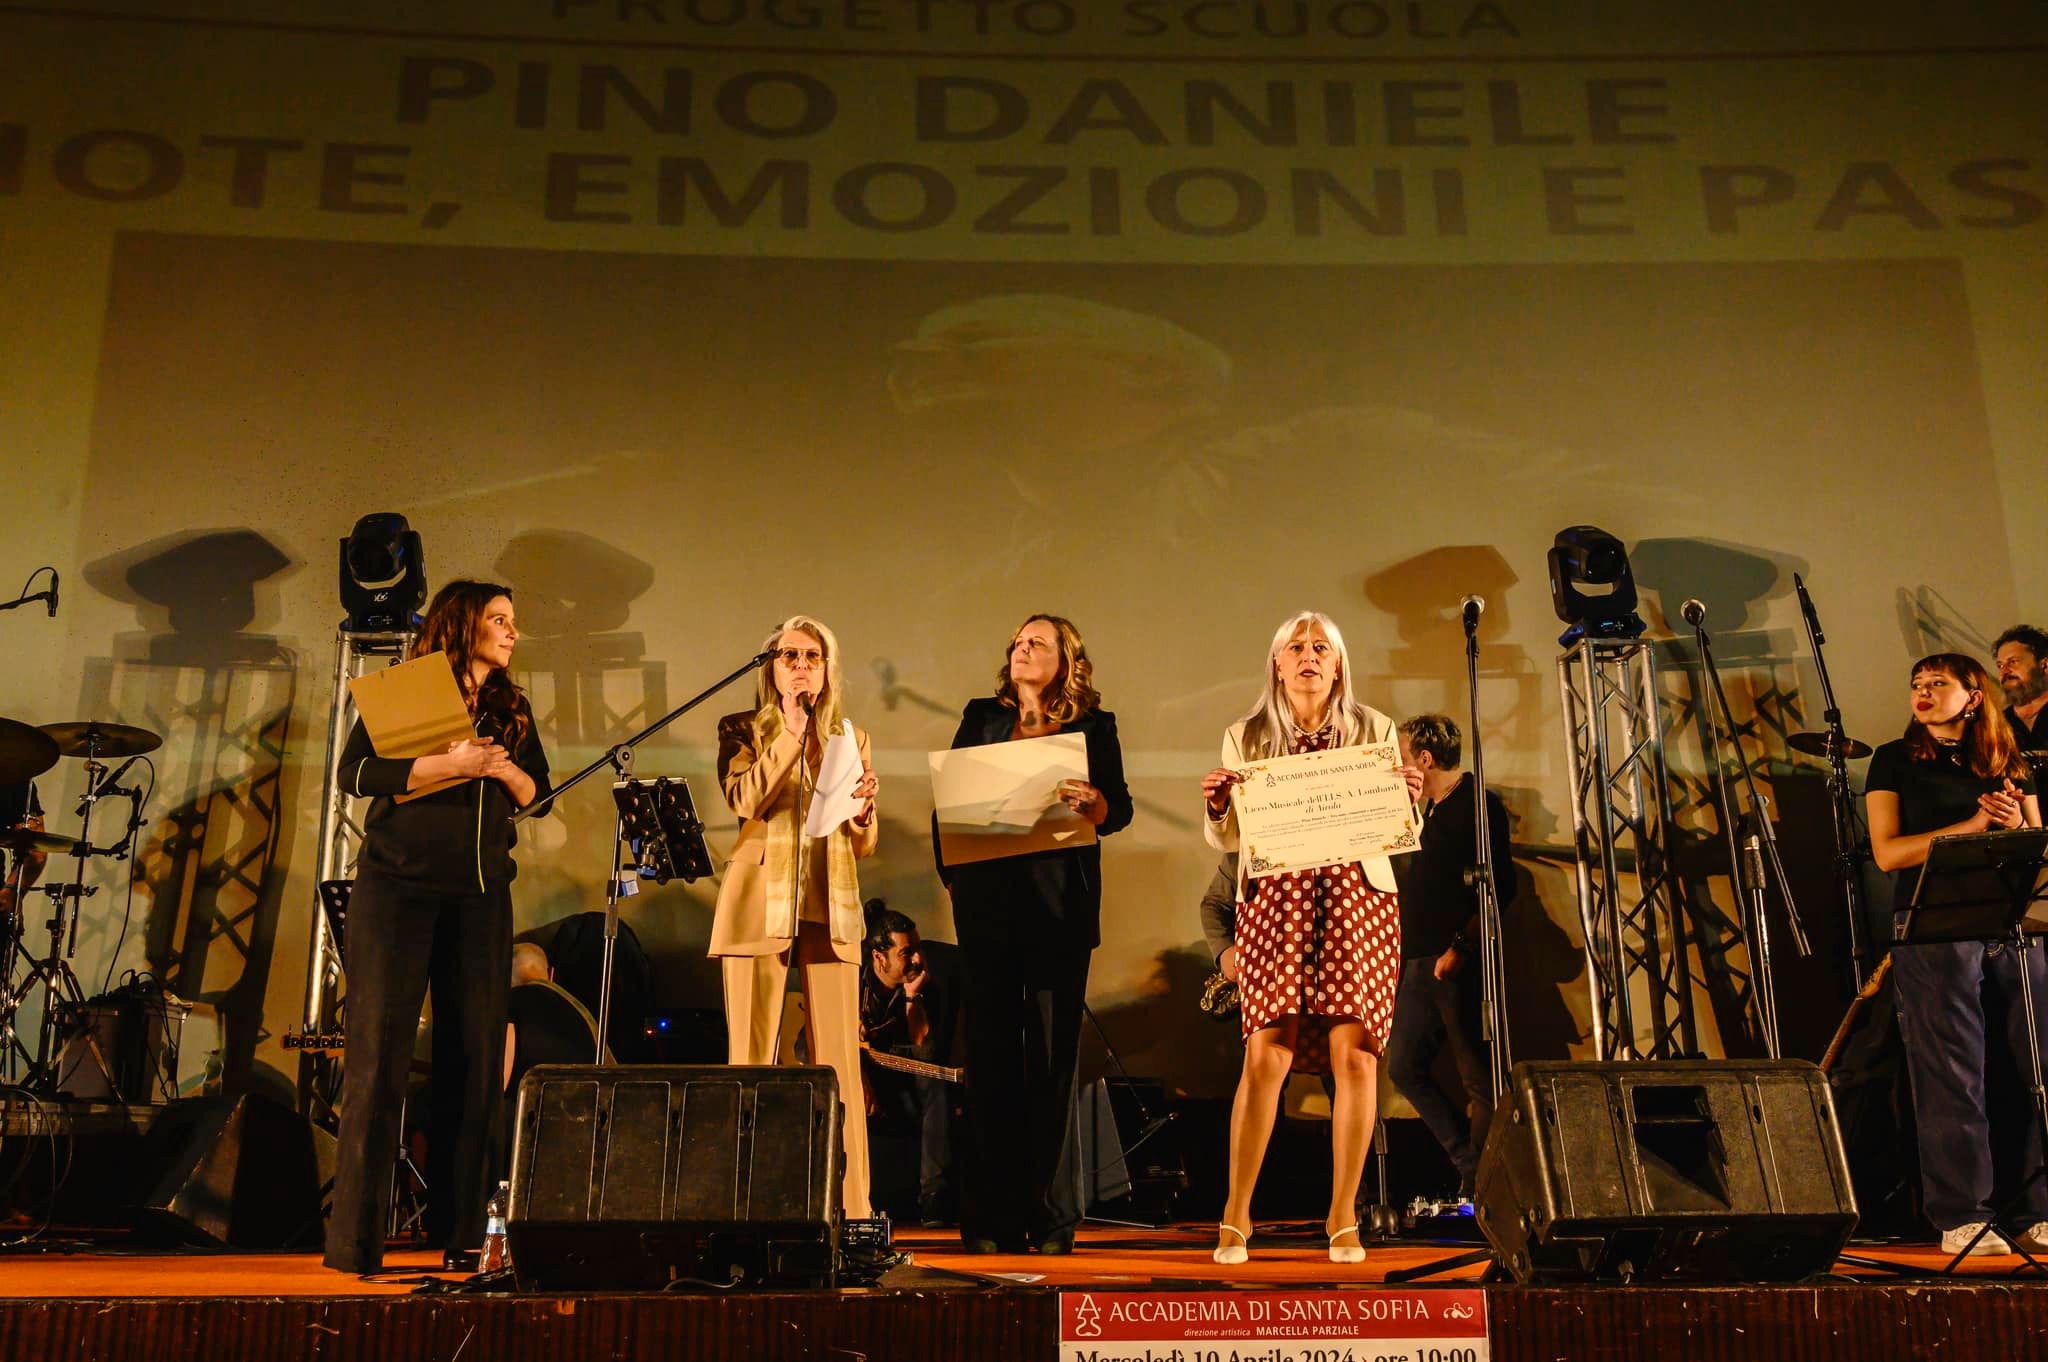 Concerto omaggio a Pino Daniele, dedicato agli istituti di istruzione superiore. Successo strepitoso